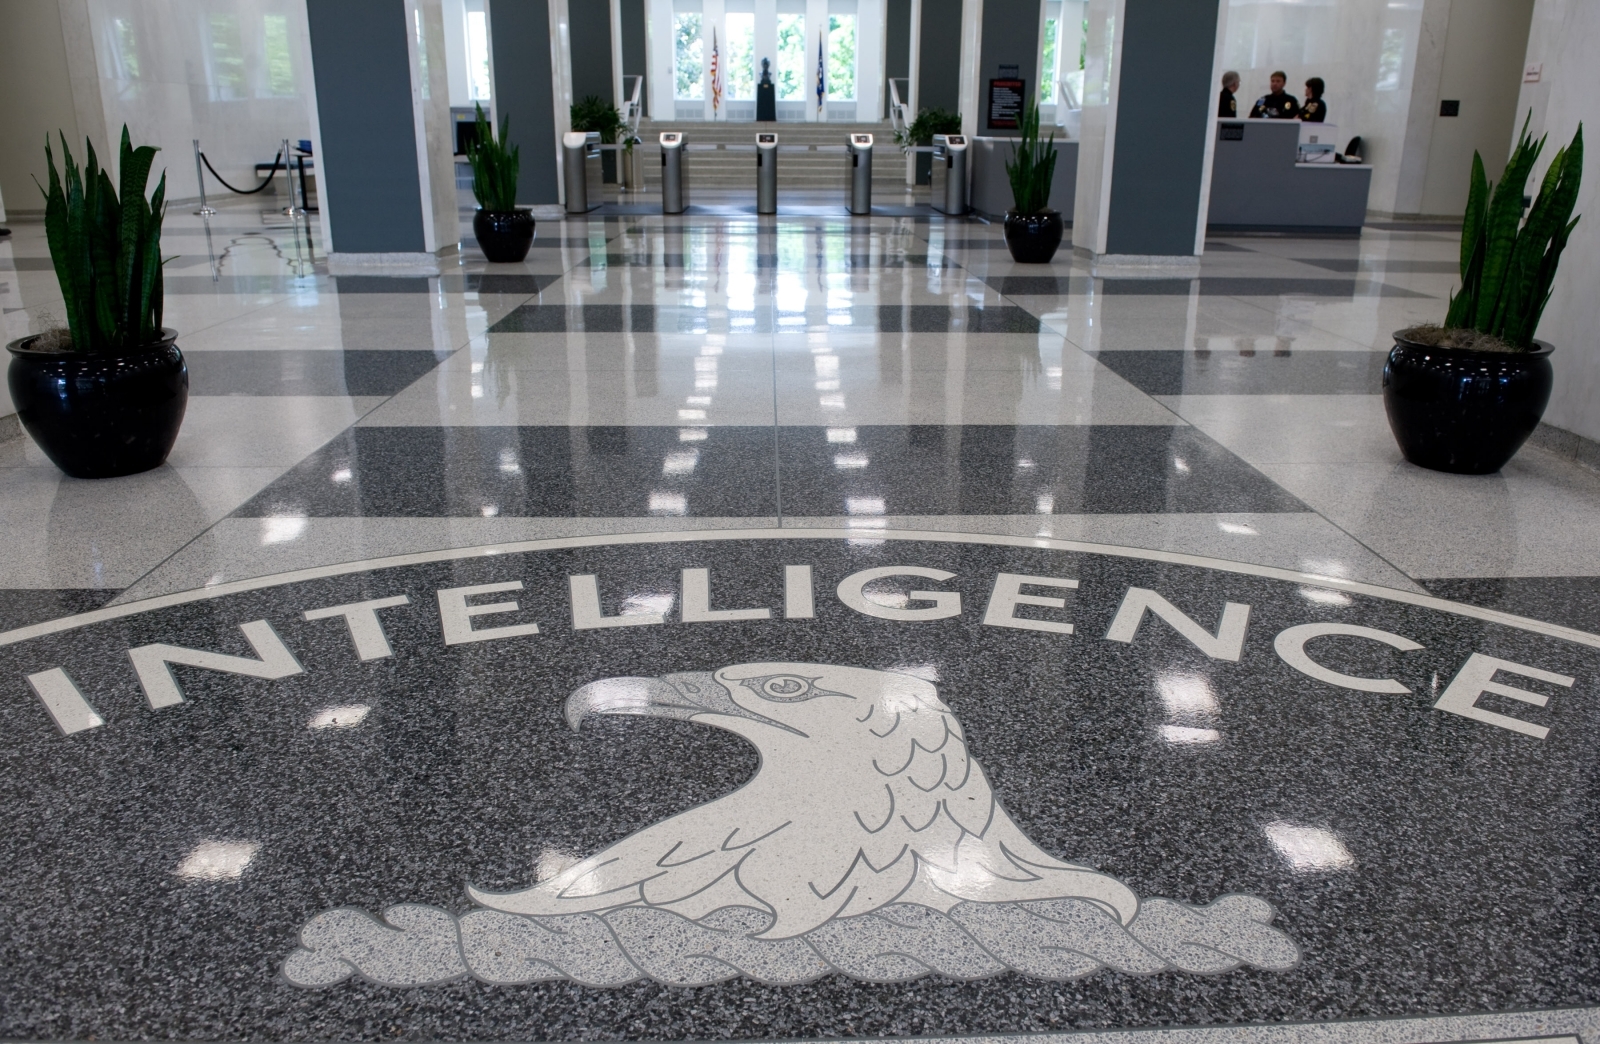 WikiLeaks CIA leaks